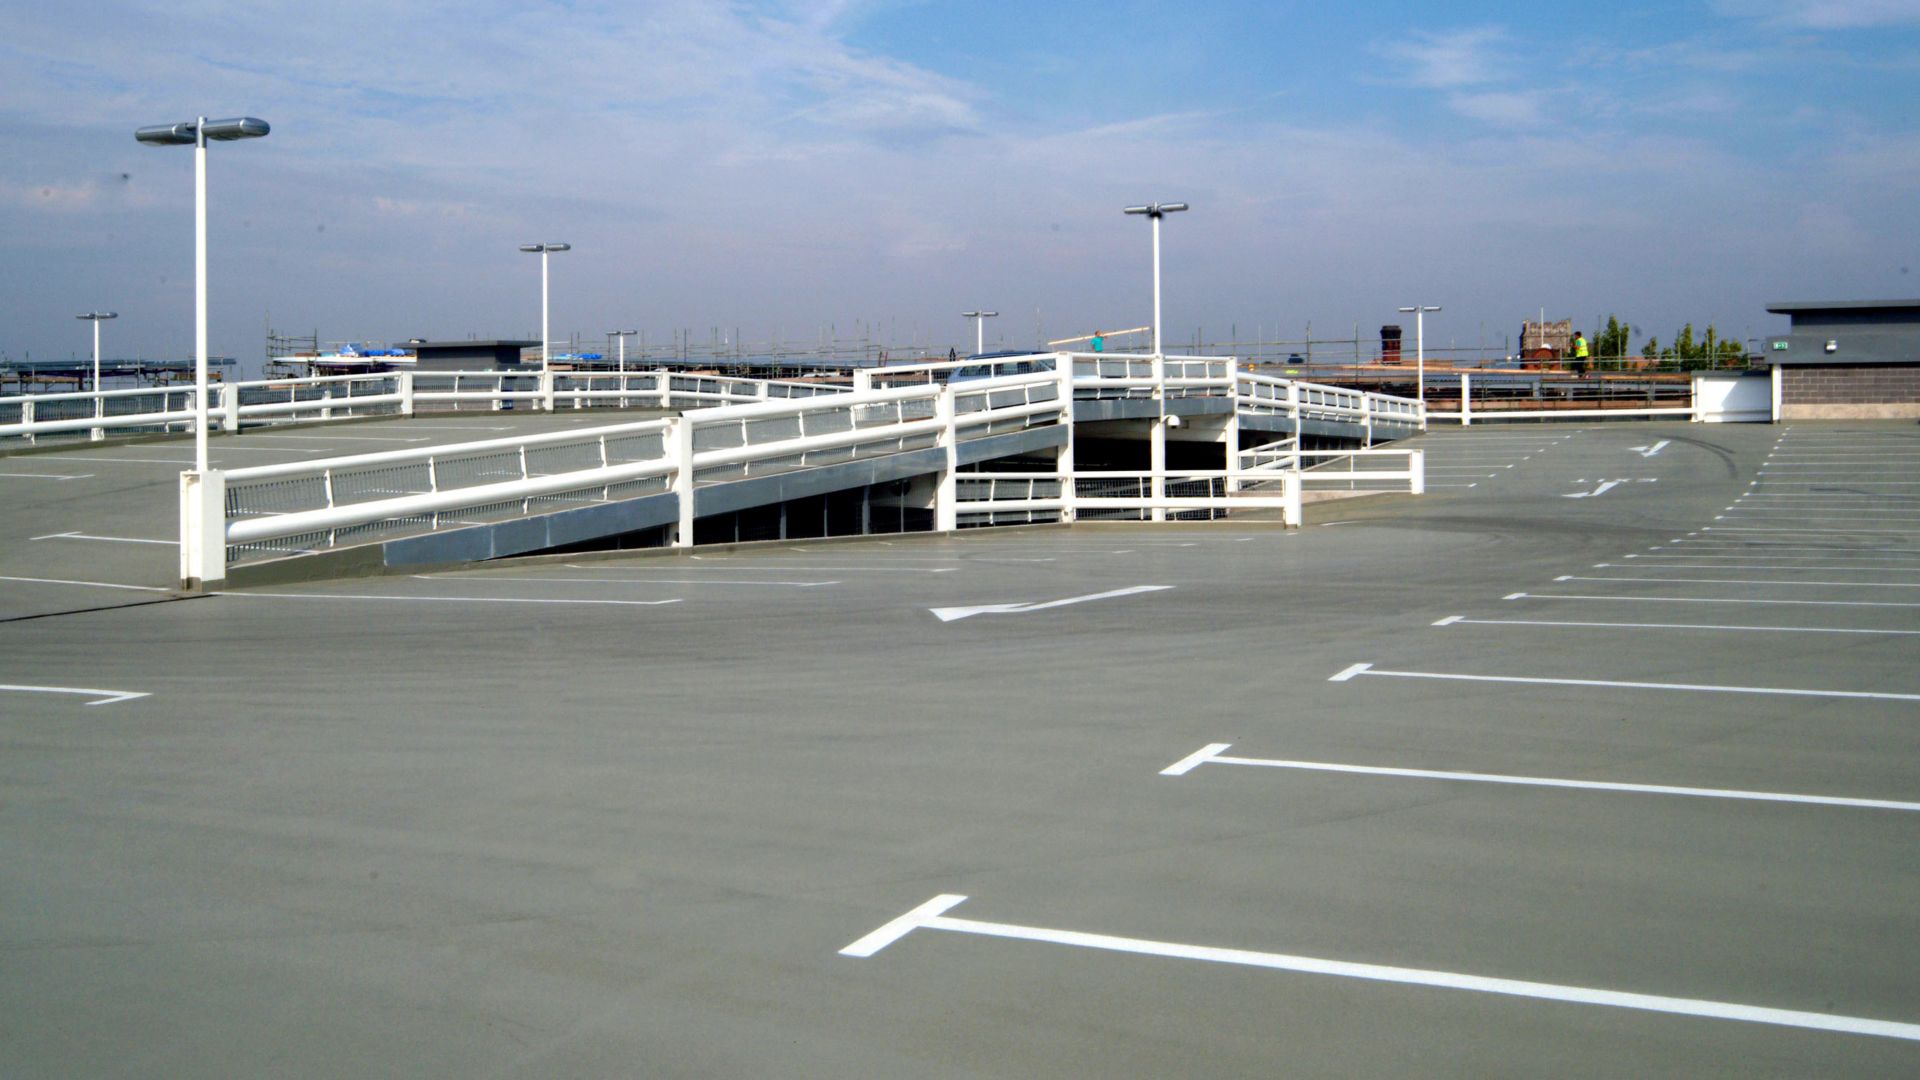 Top deck of a car parking garage